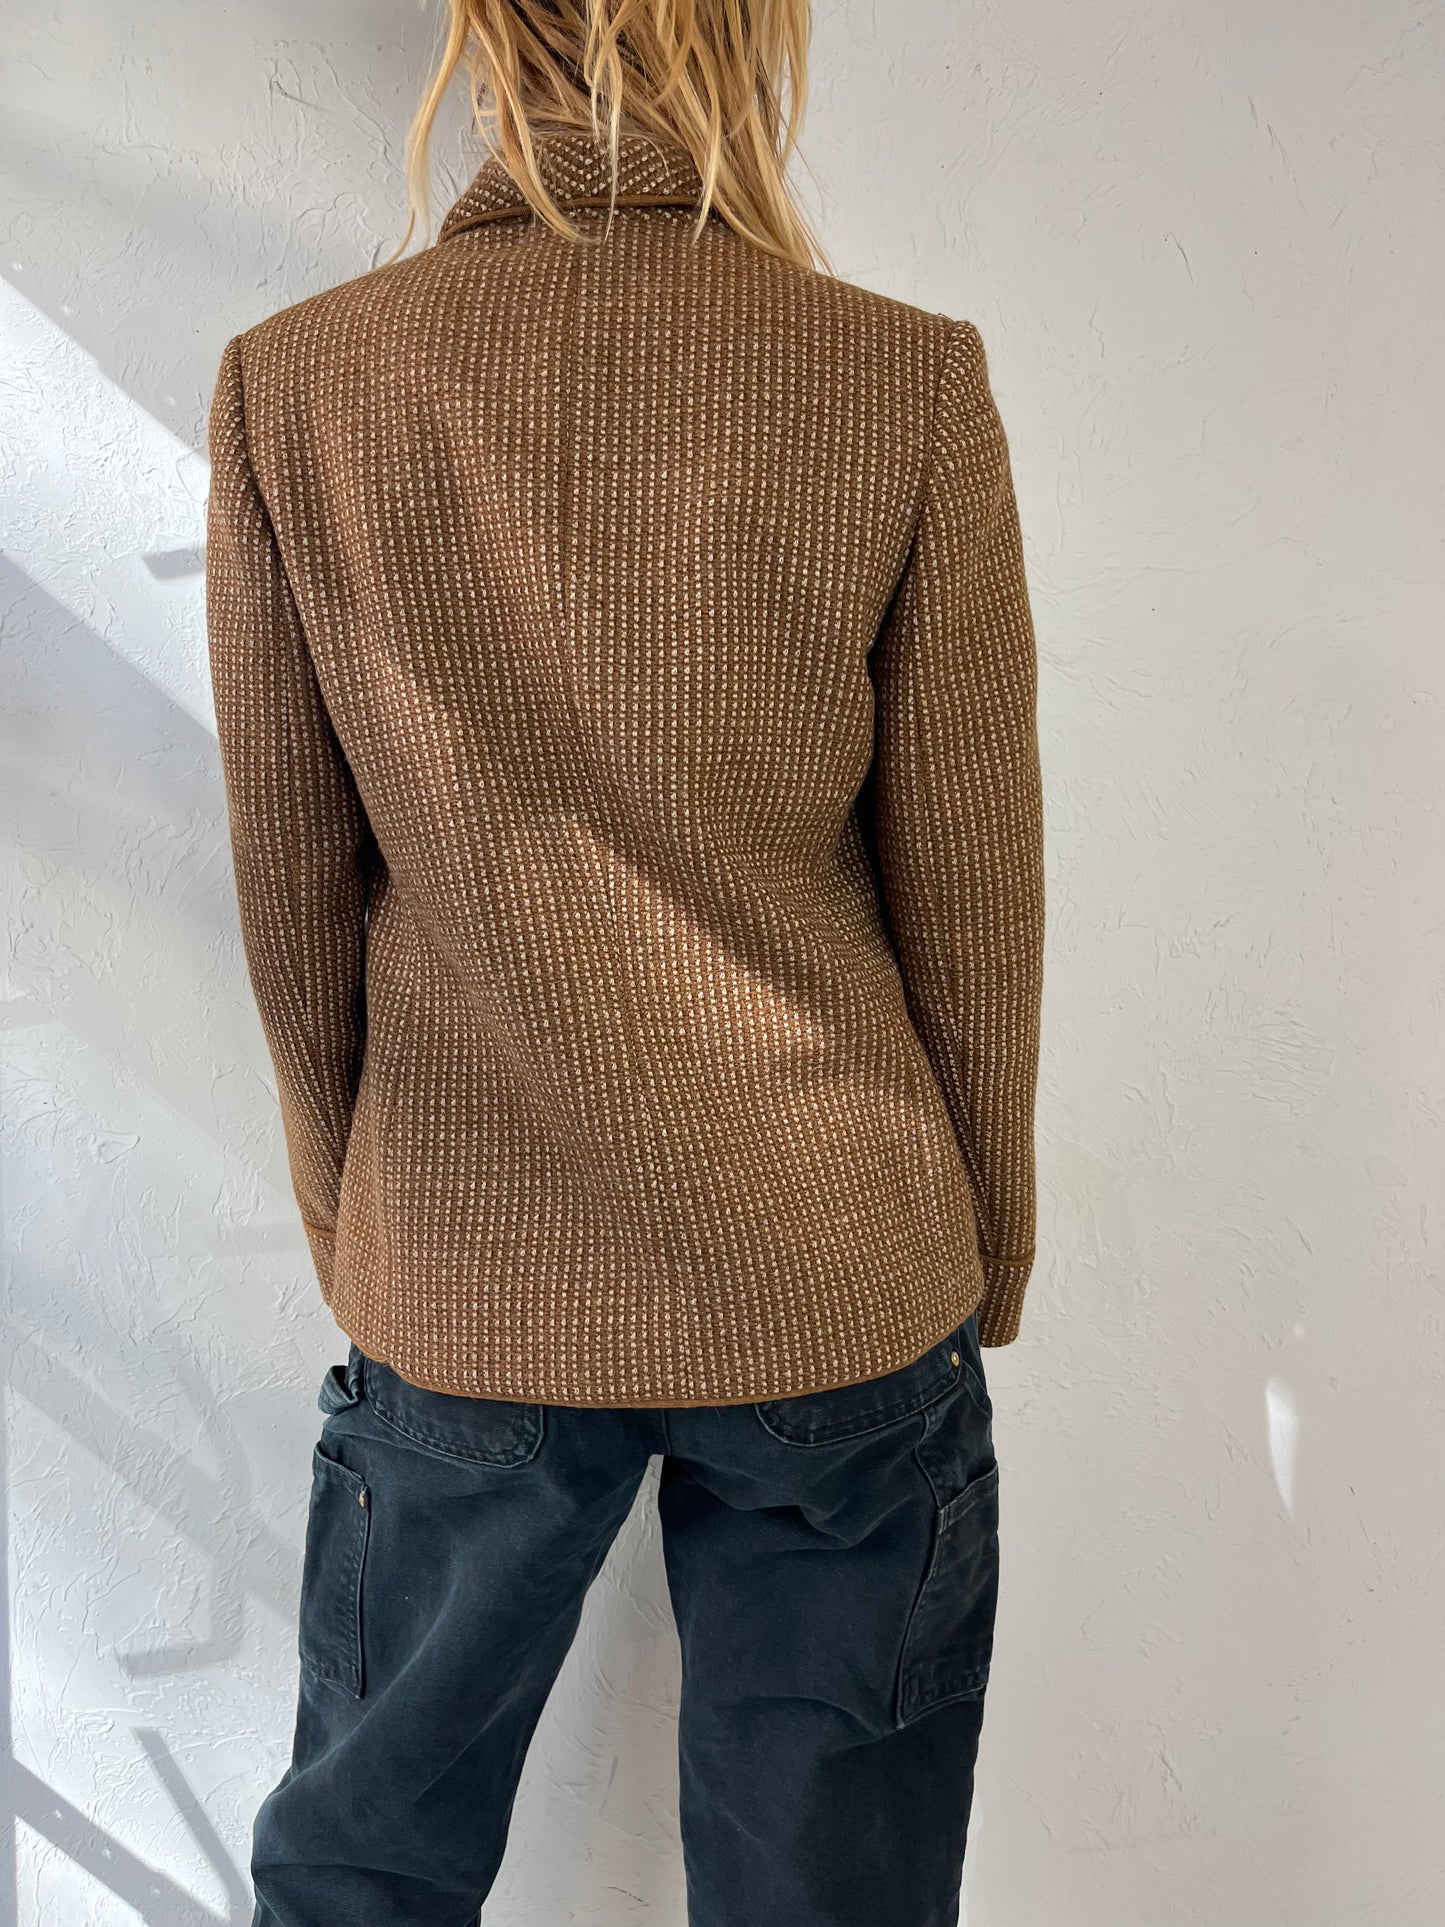 80s 'Michel Robichaud' Brown Blazer Jacket / Medium